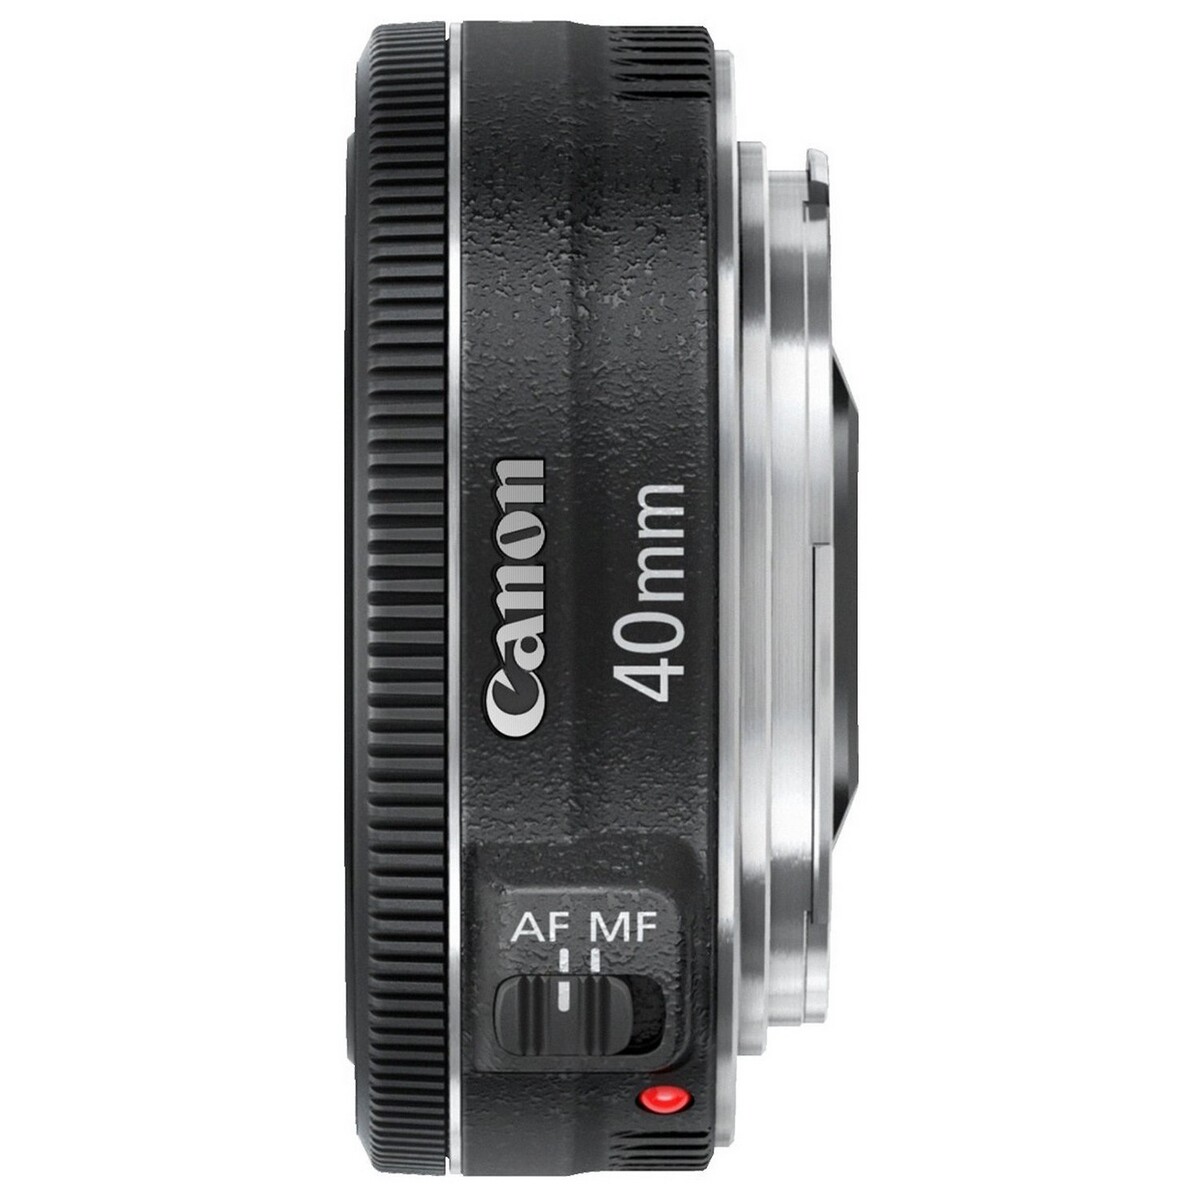 Canon Lens EF 40mm F/2.8 STM